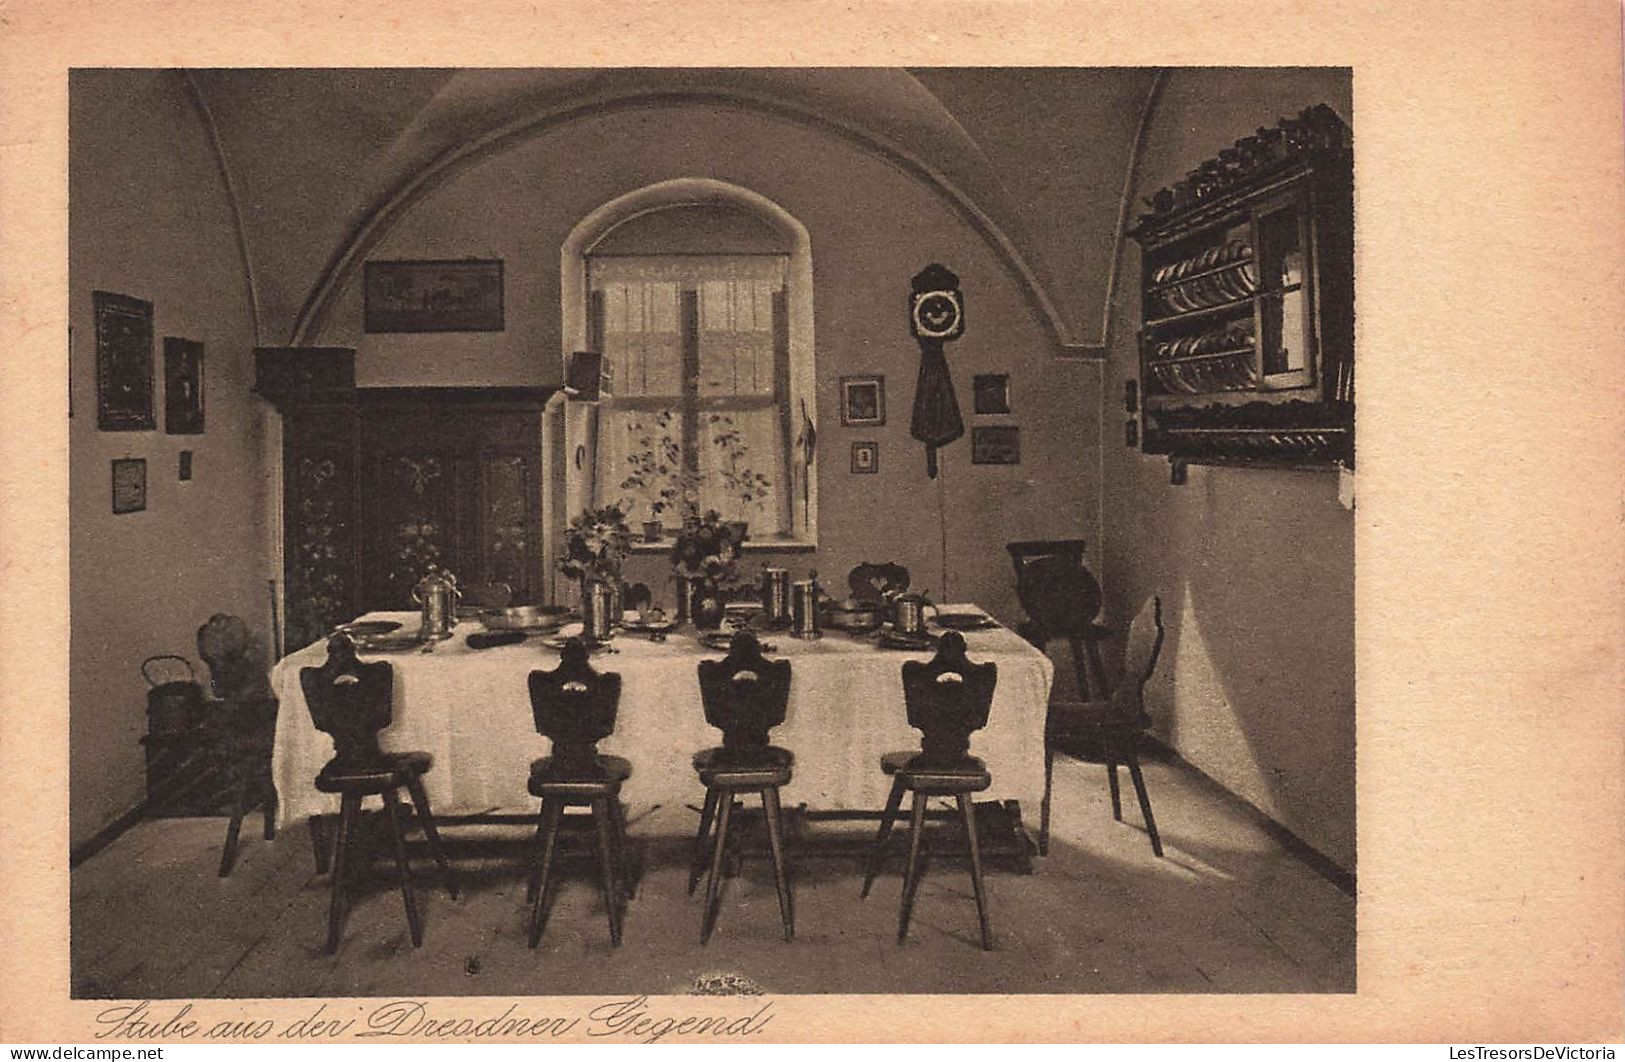 MUSÉES - Landesverein - Carte Postale Ancienne - Museen